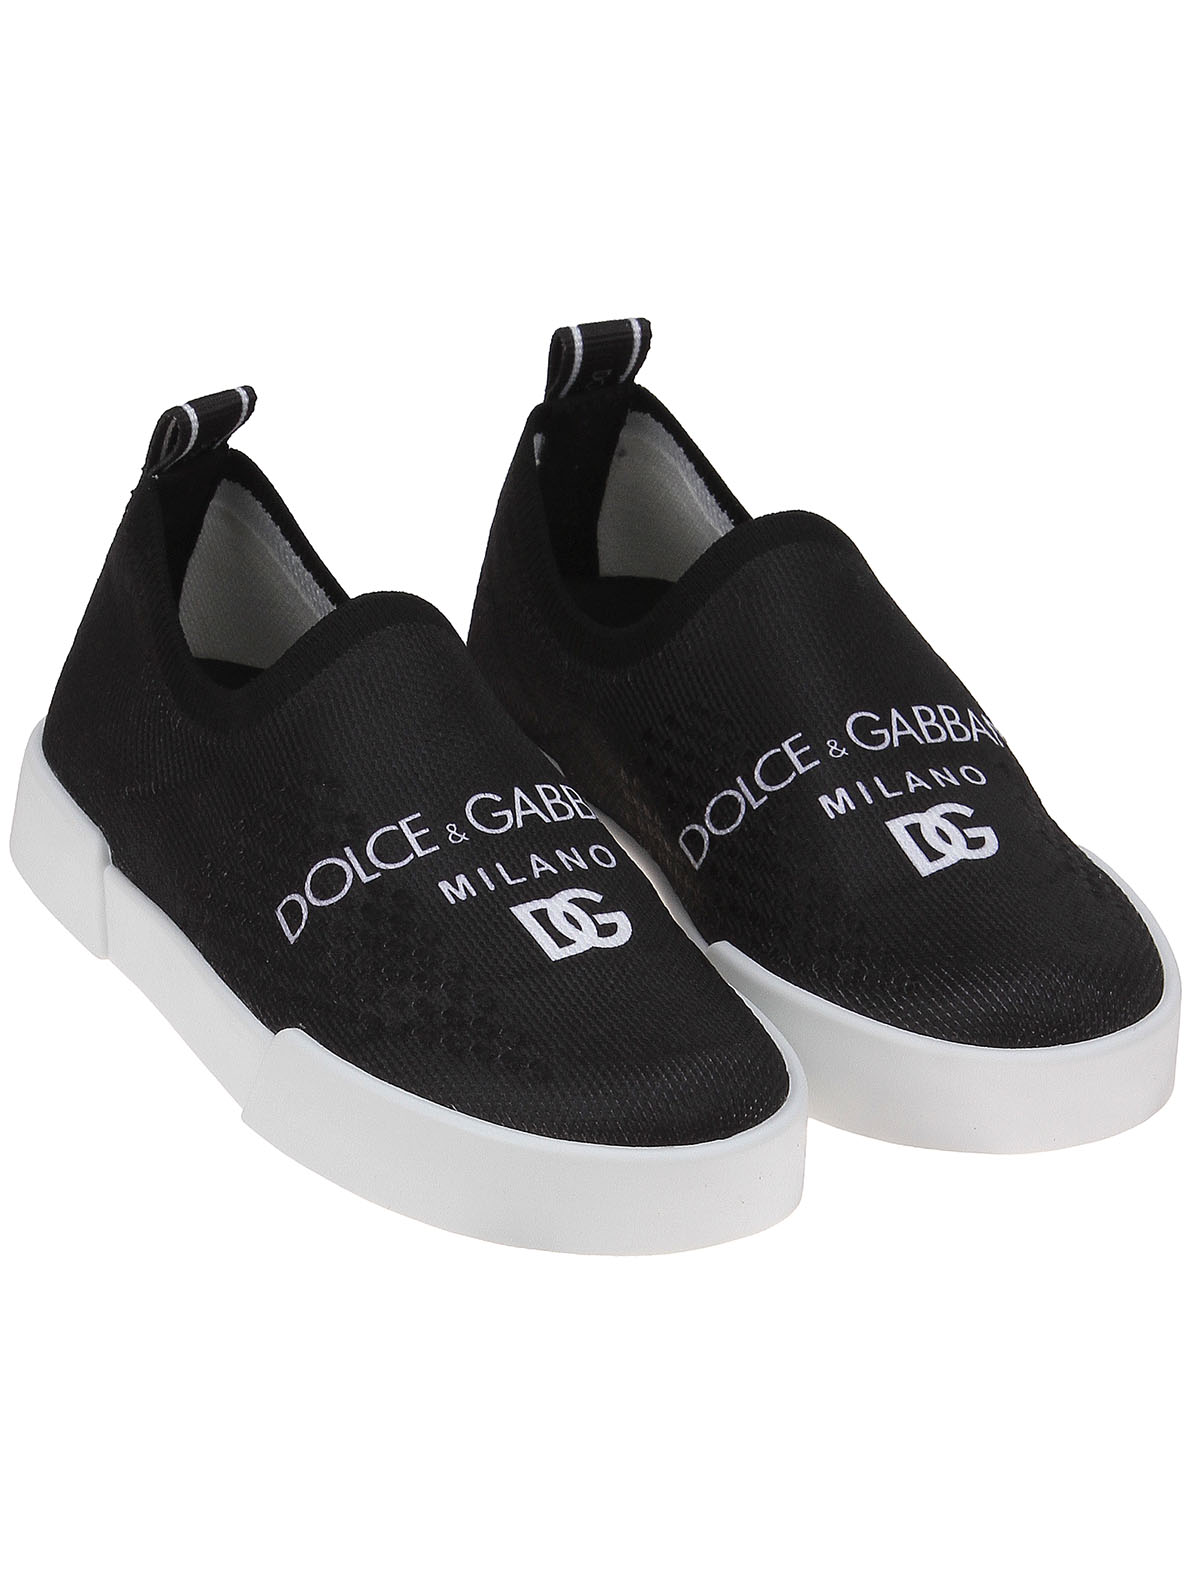 Слипоны Dolce & Gabbana 2489020, цвет черный, размер 32